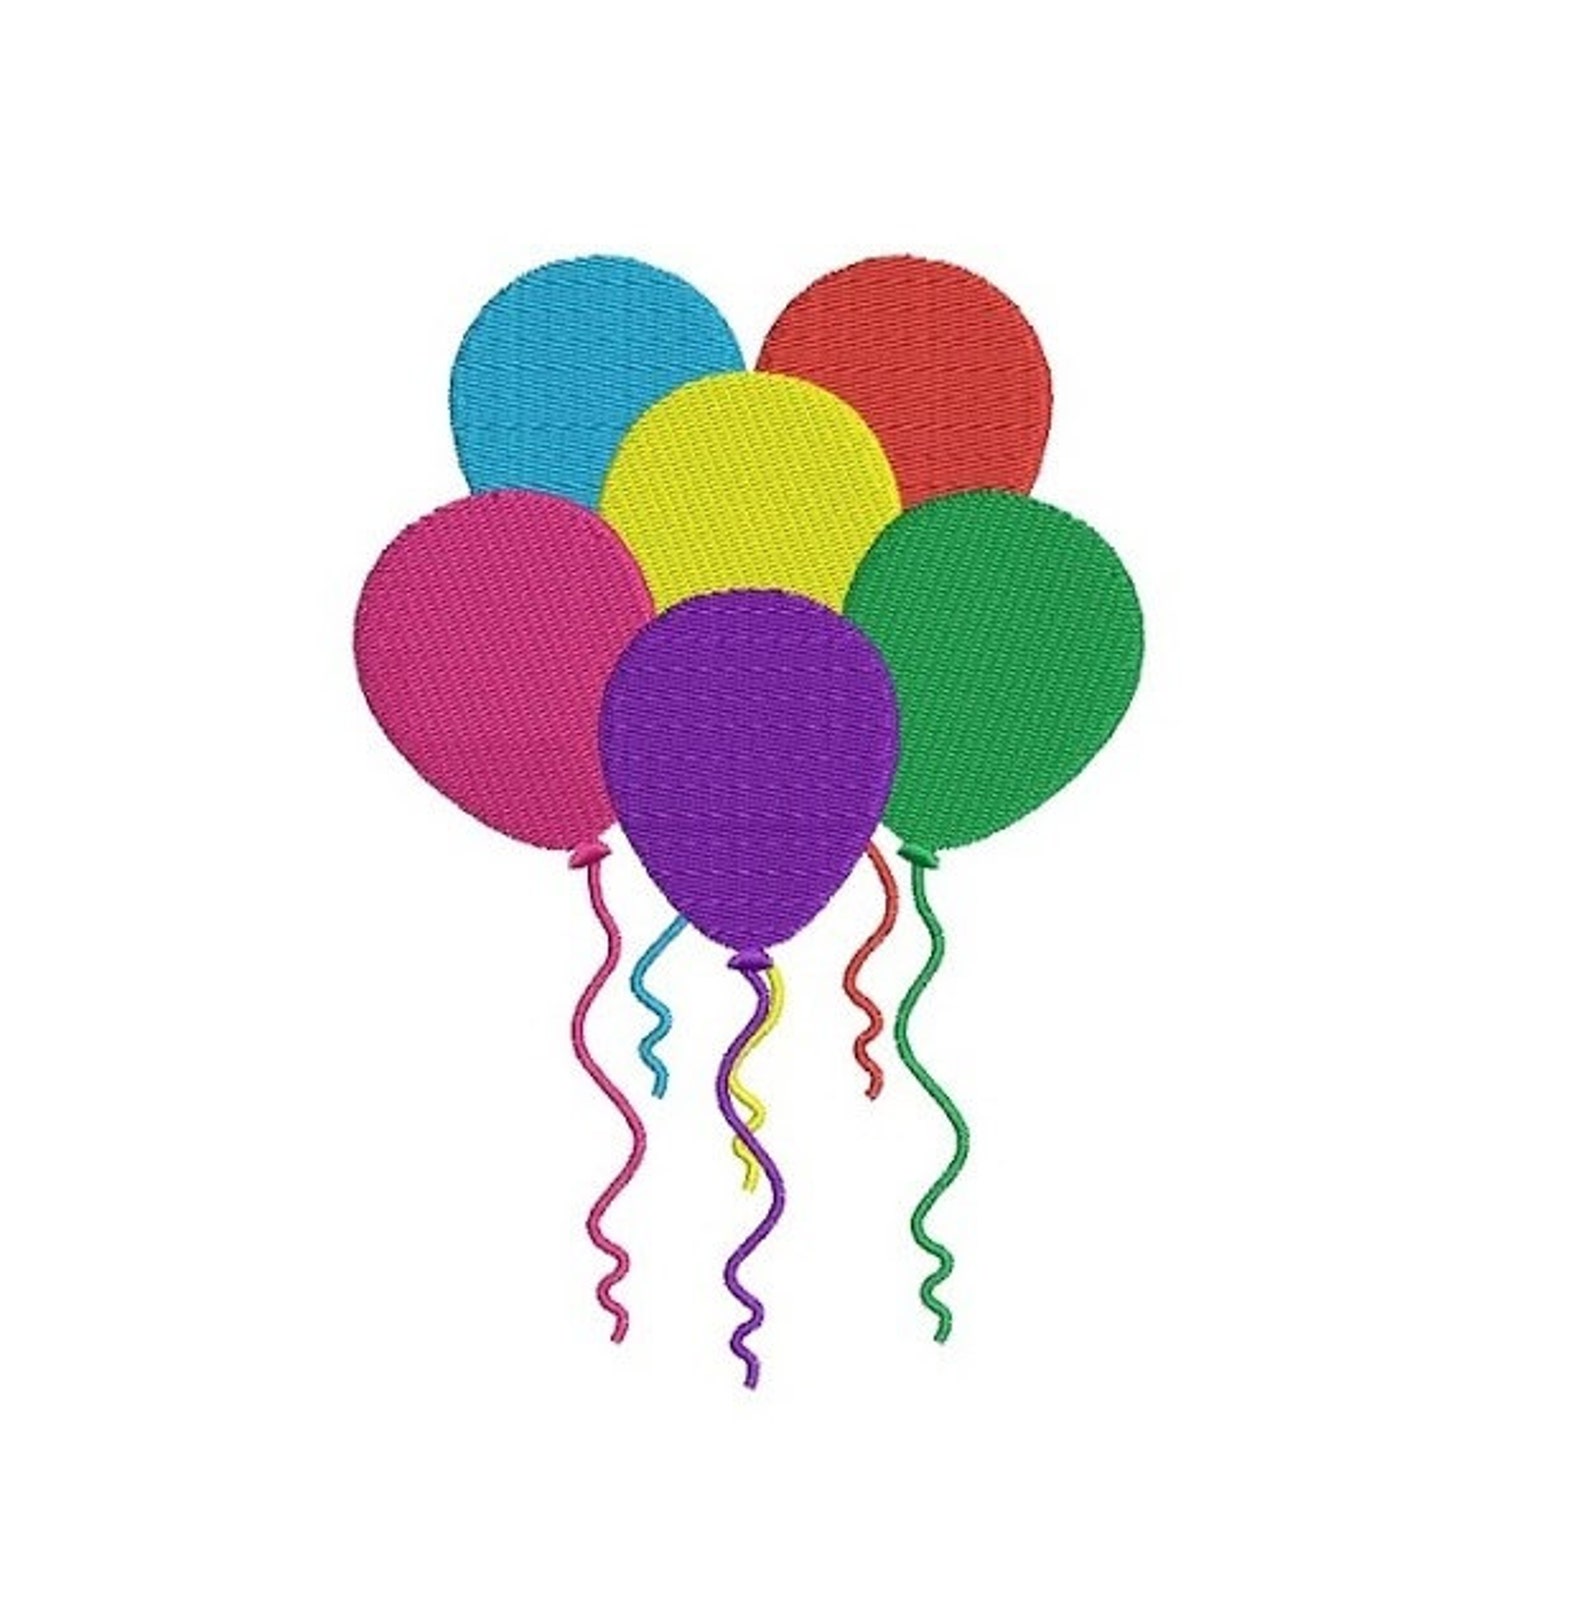 Шарики воздушные послушные. Аппликация шарики. Аппликация воздушных шаров. Аппликация разноцветные шары. Аппликация воздушный шар.